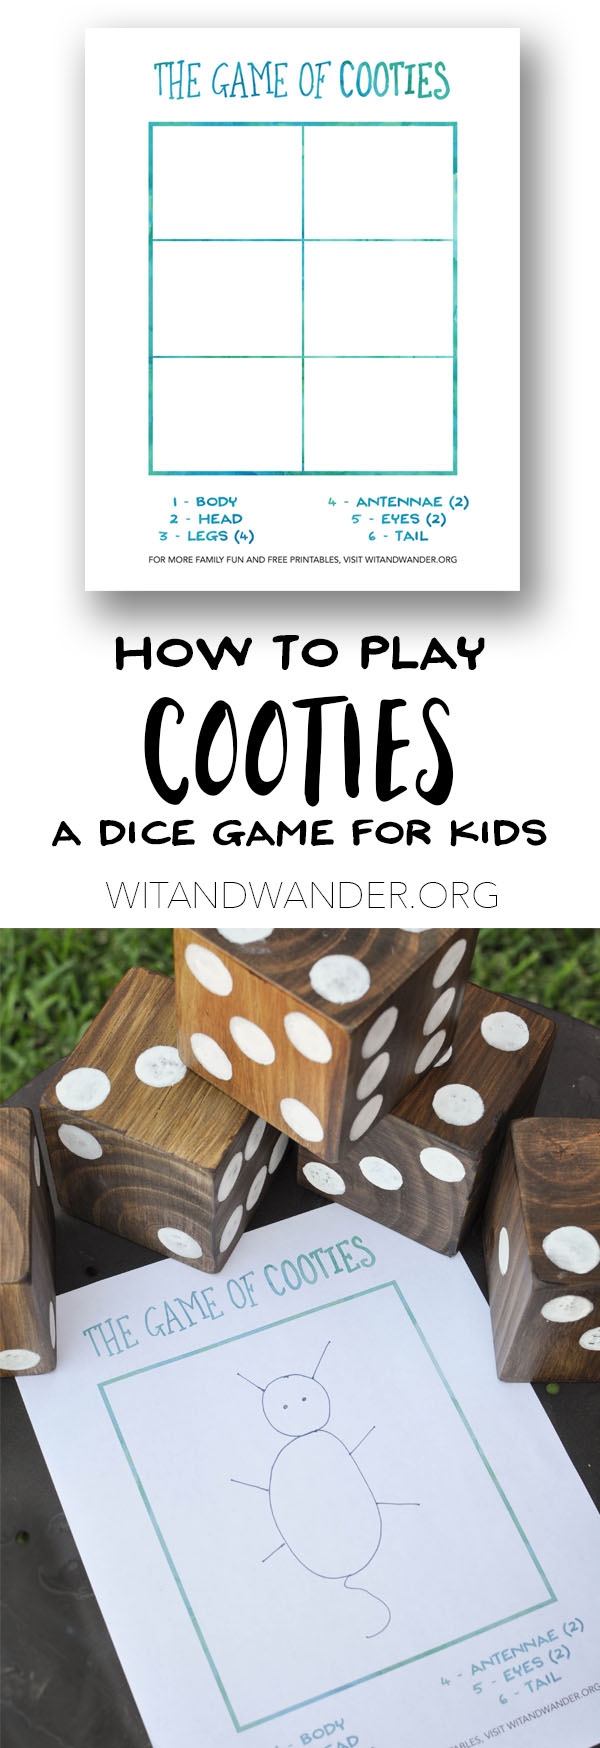 DIY Backyard Games and Free Printable Cooties Game